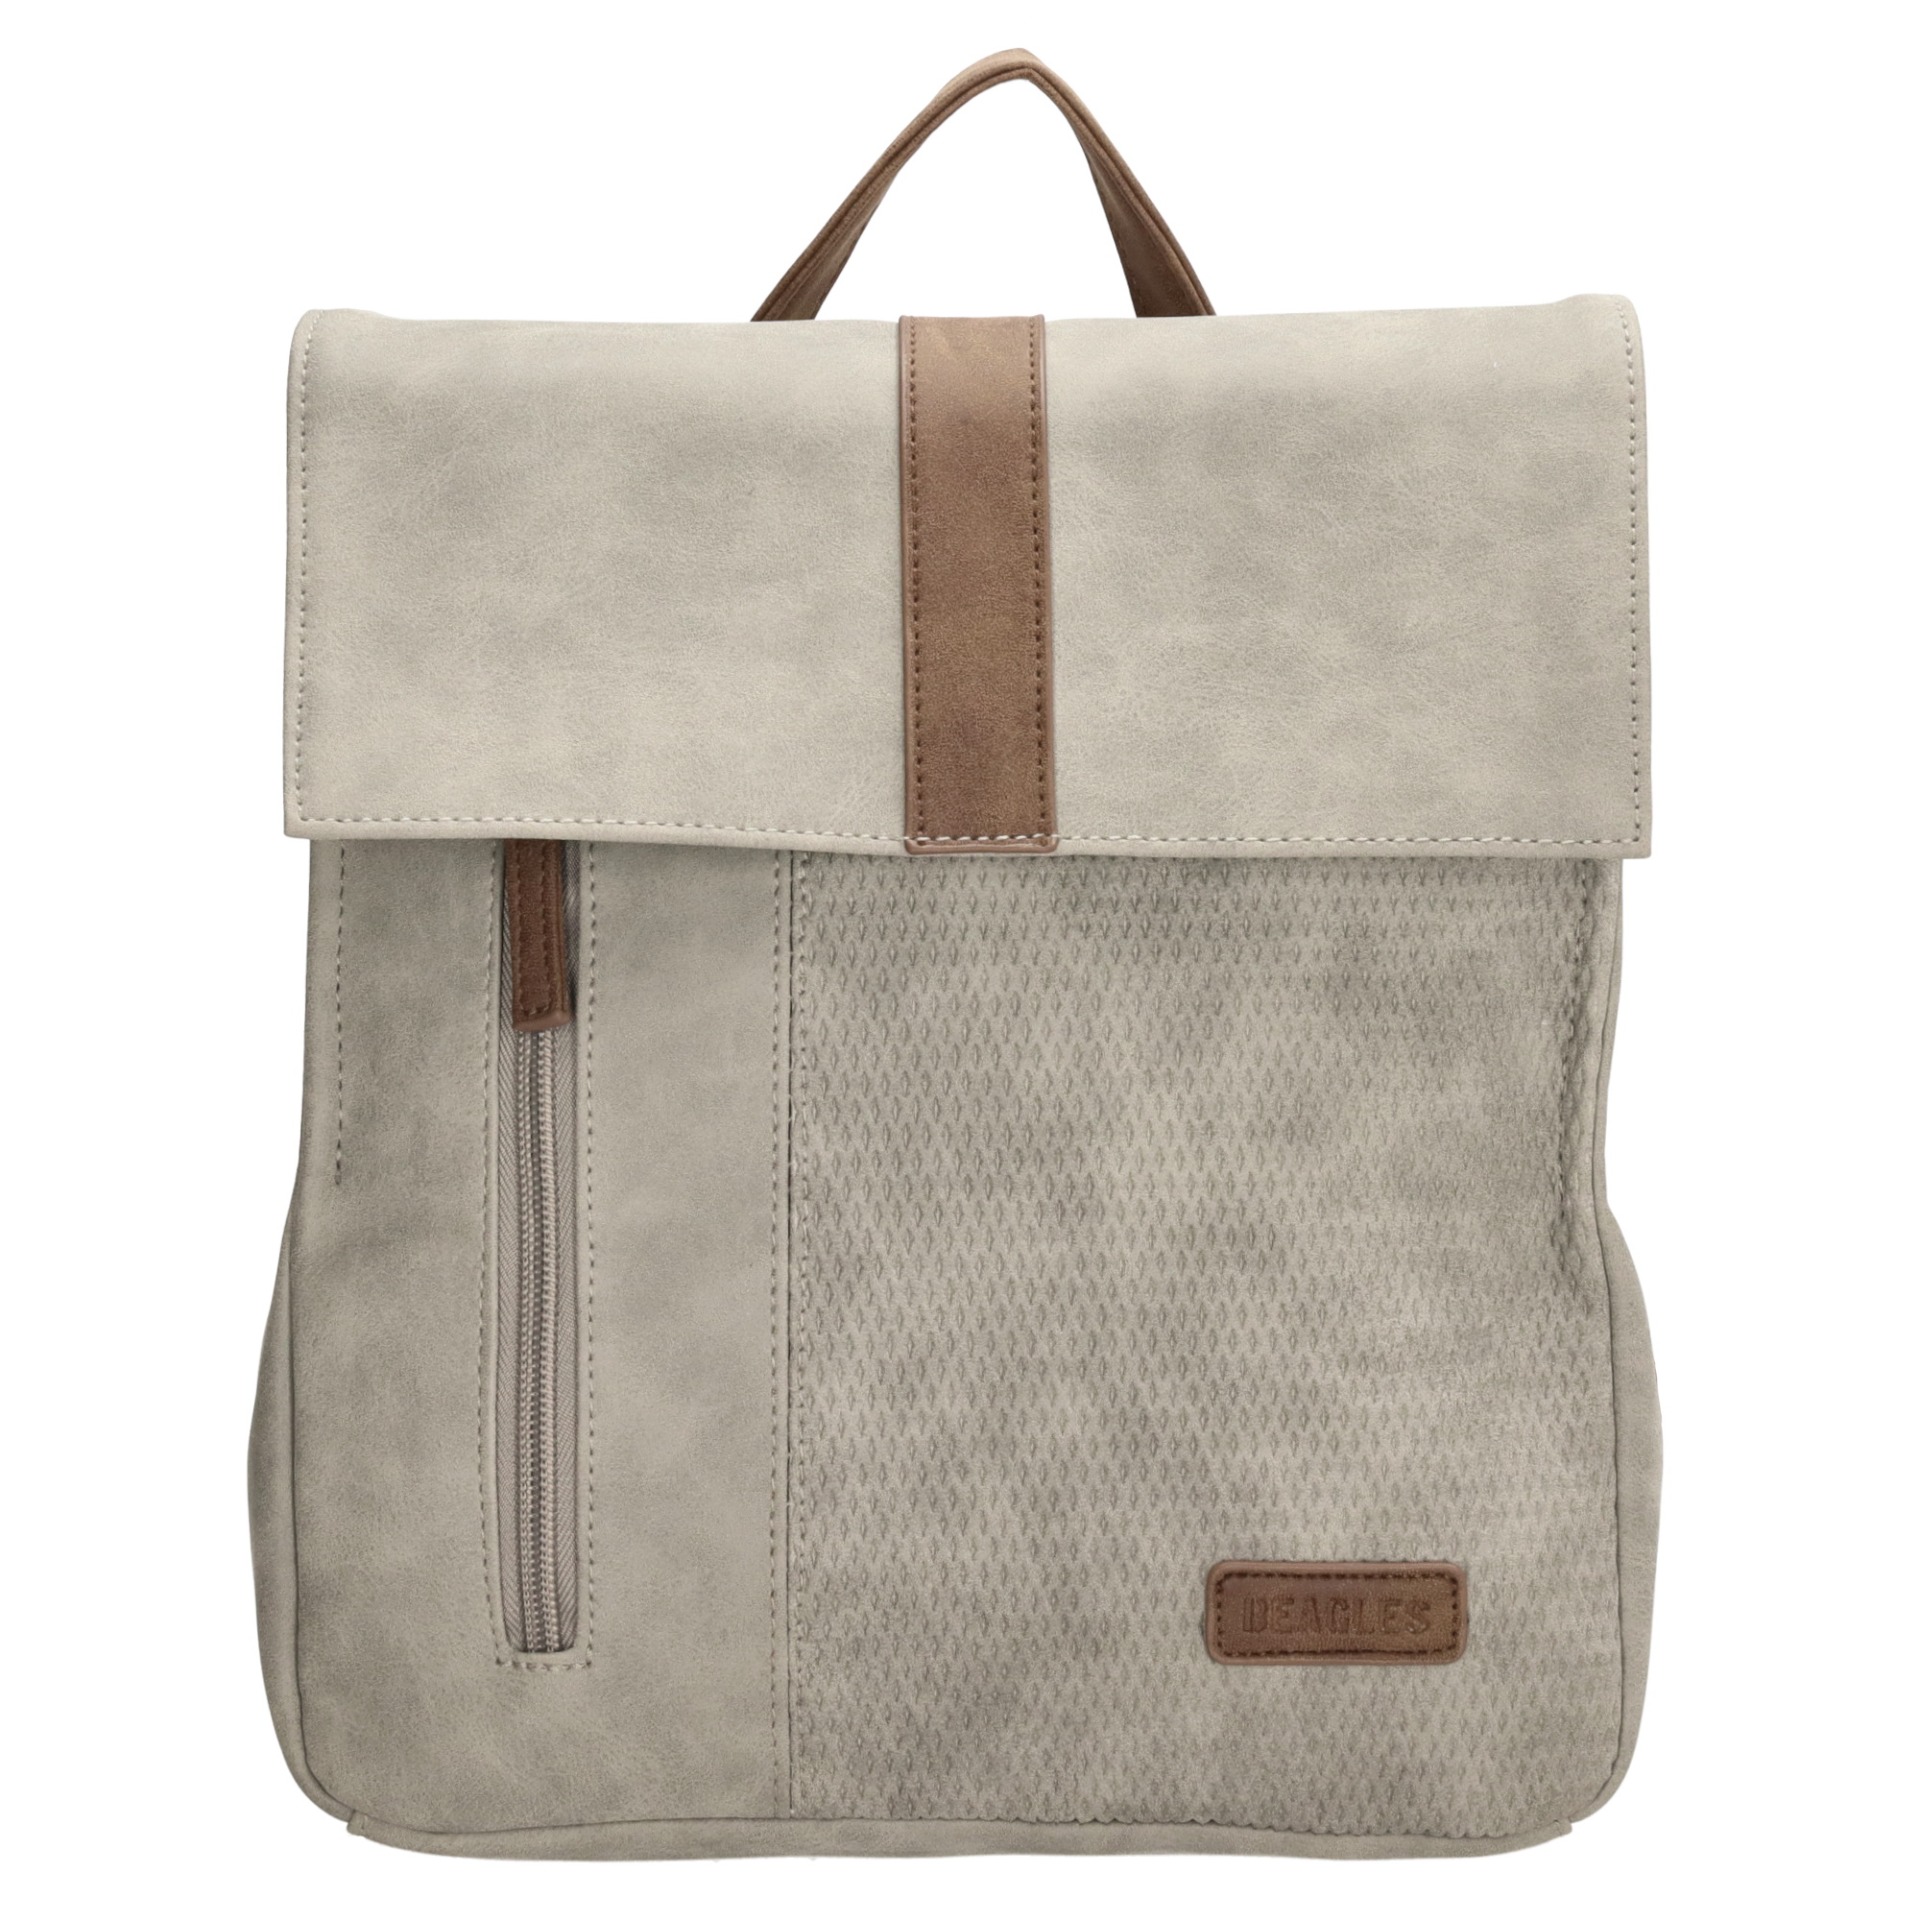 E-shop Beagles Brunete Backpack 4 l Light Grey